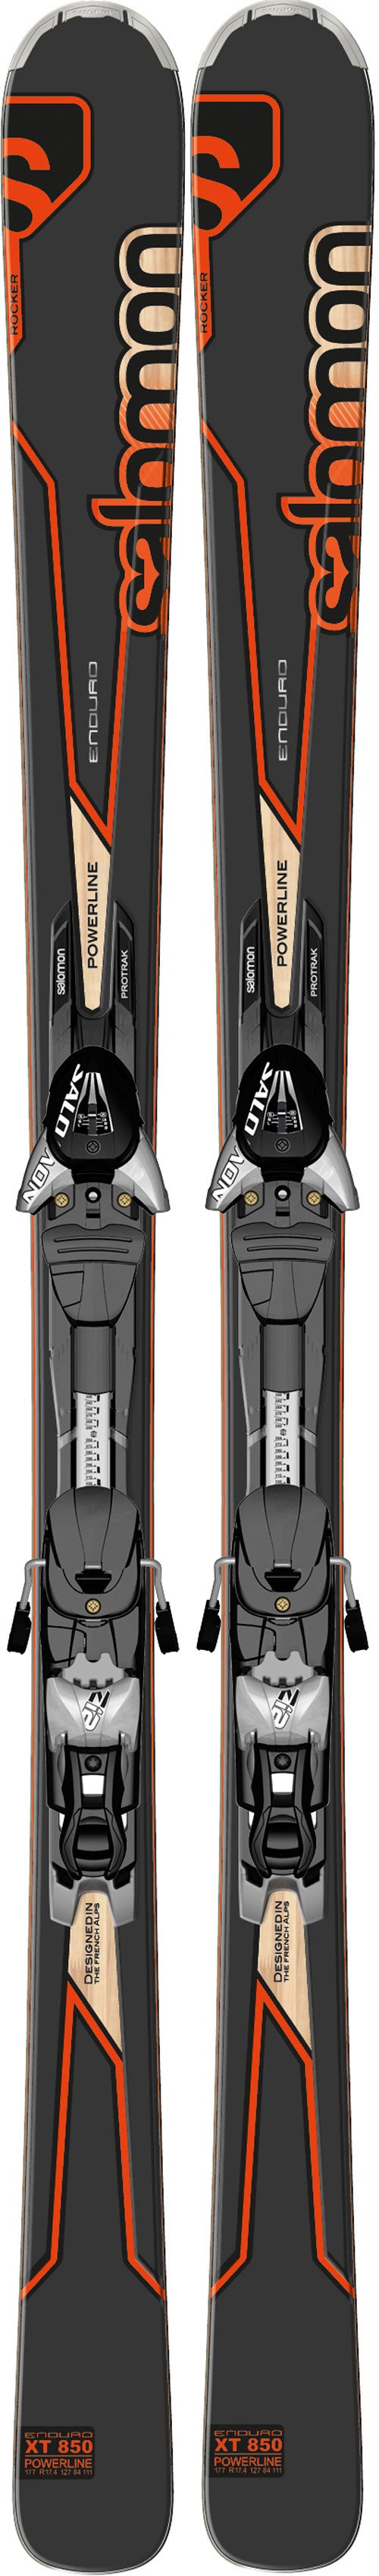 Ideal Evaluación absorción Salomon Enduro XT 850 (2013) - Ski Mag